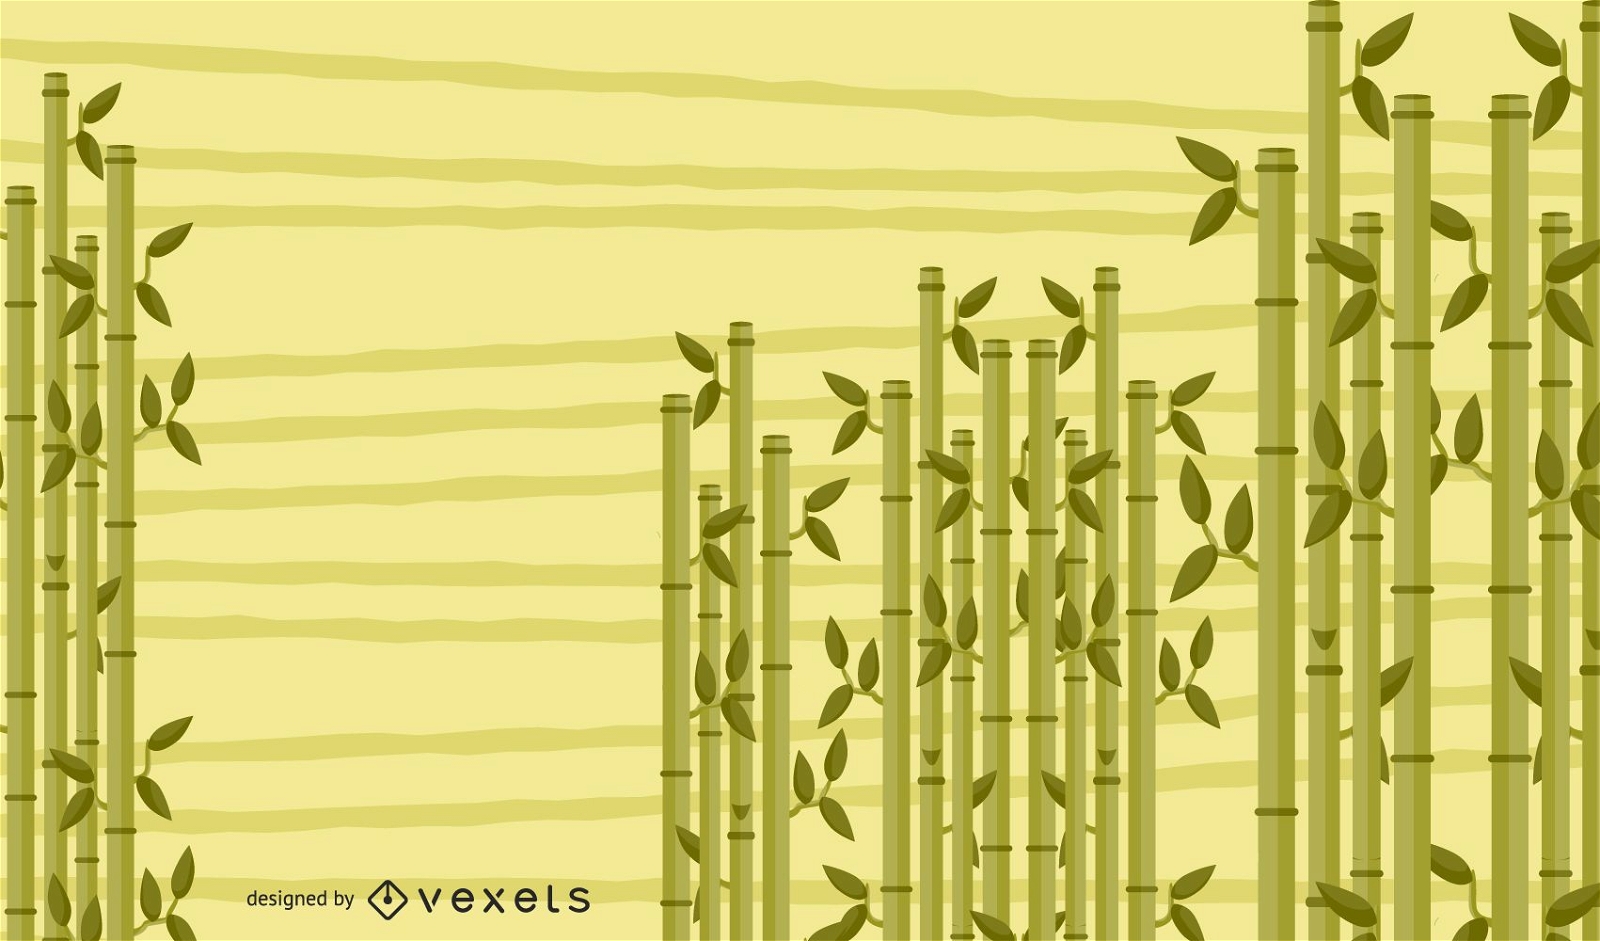 Projeto de fundo de bambu ilustrado